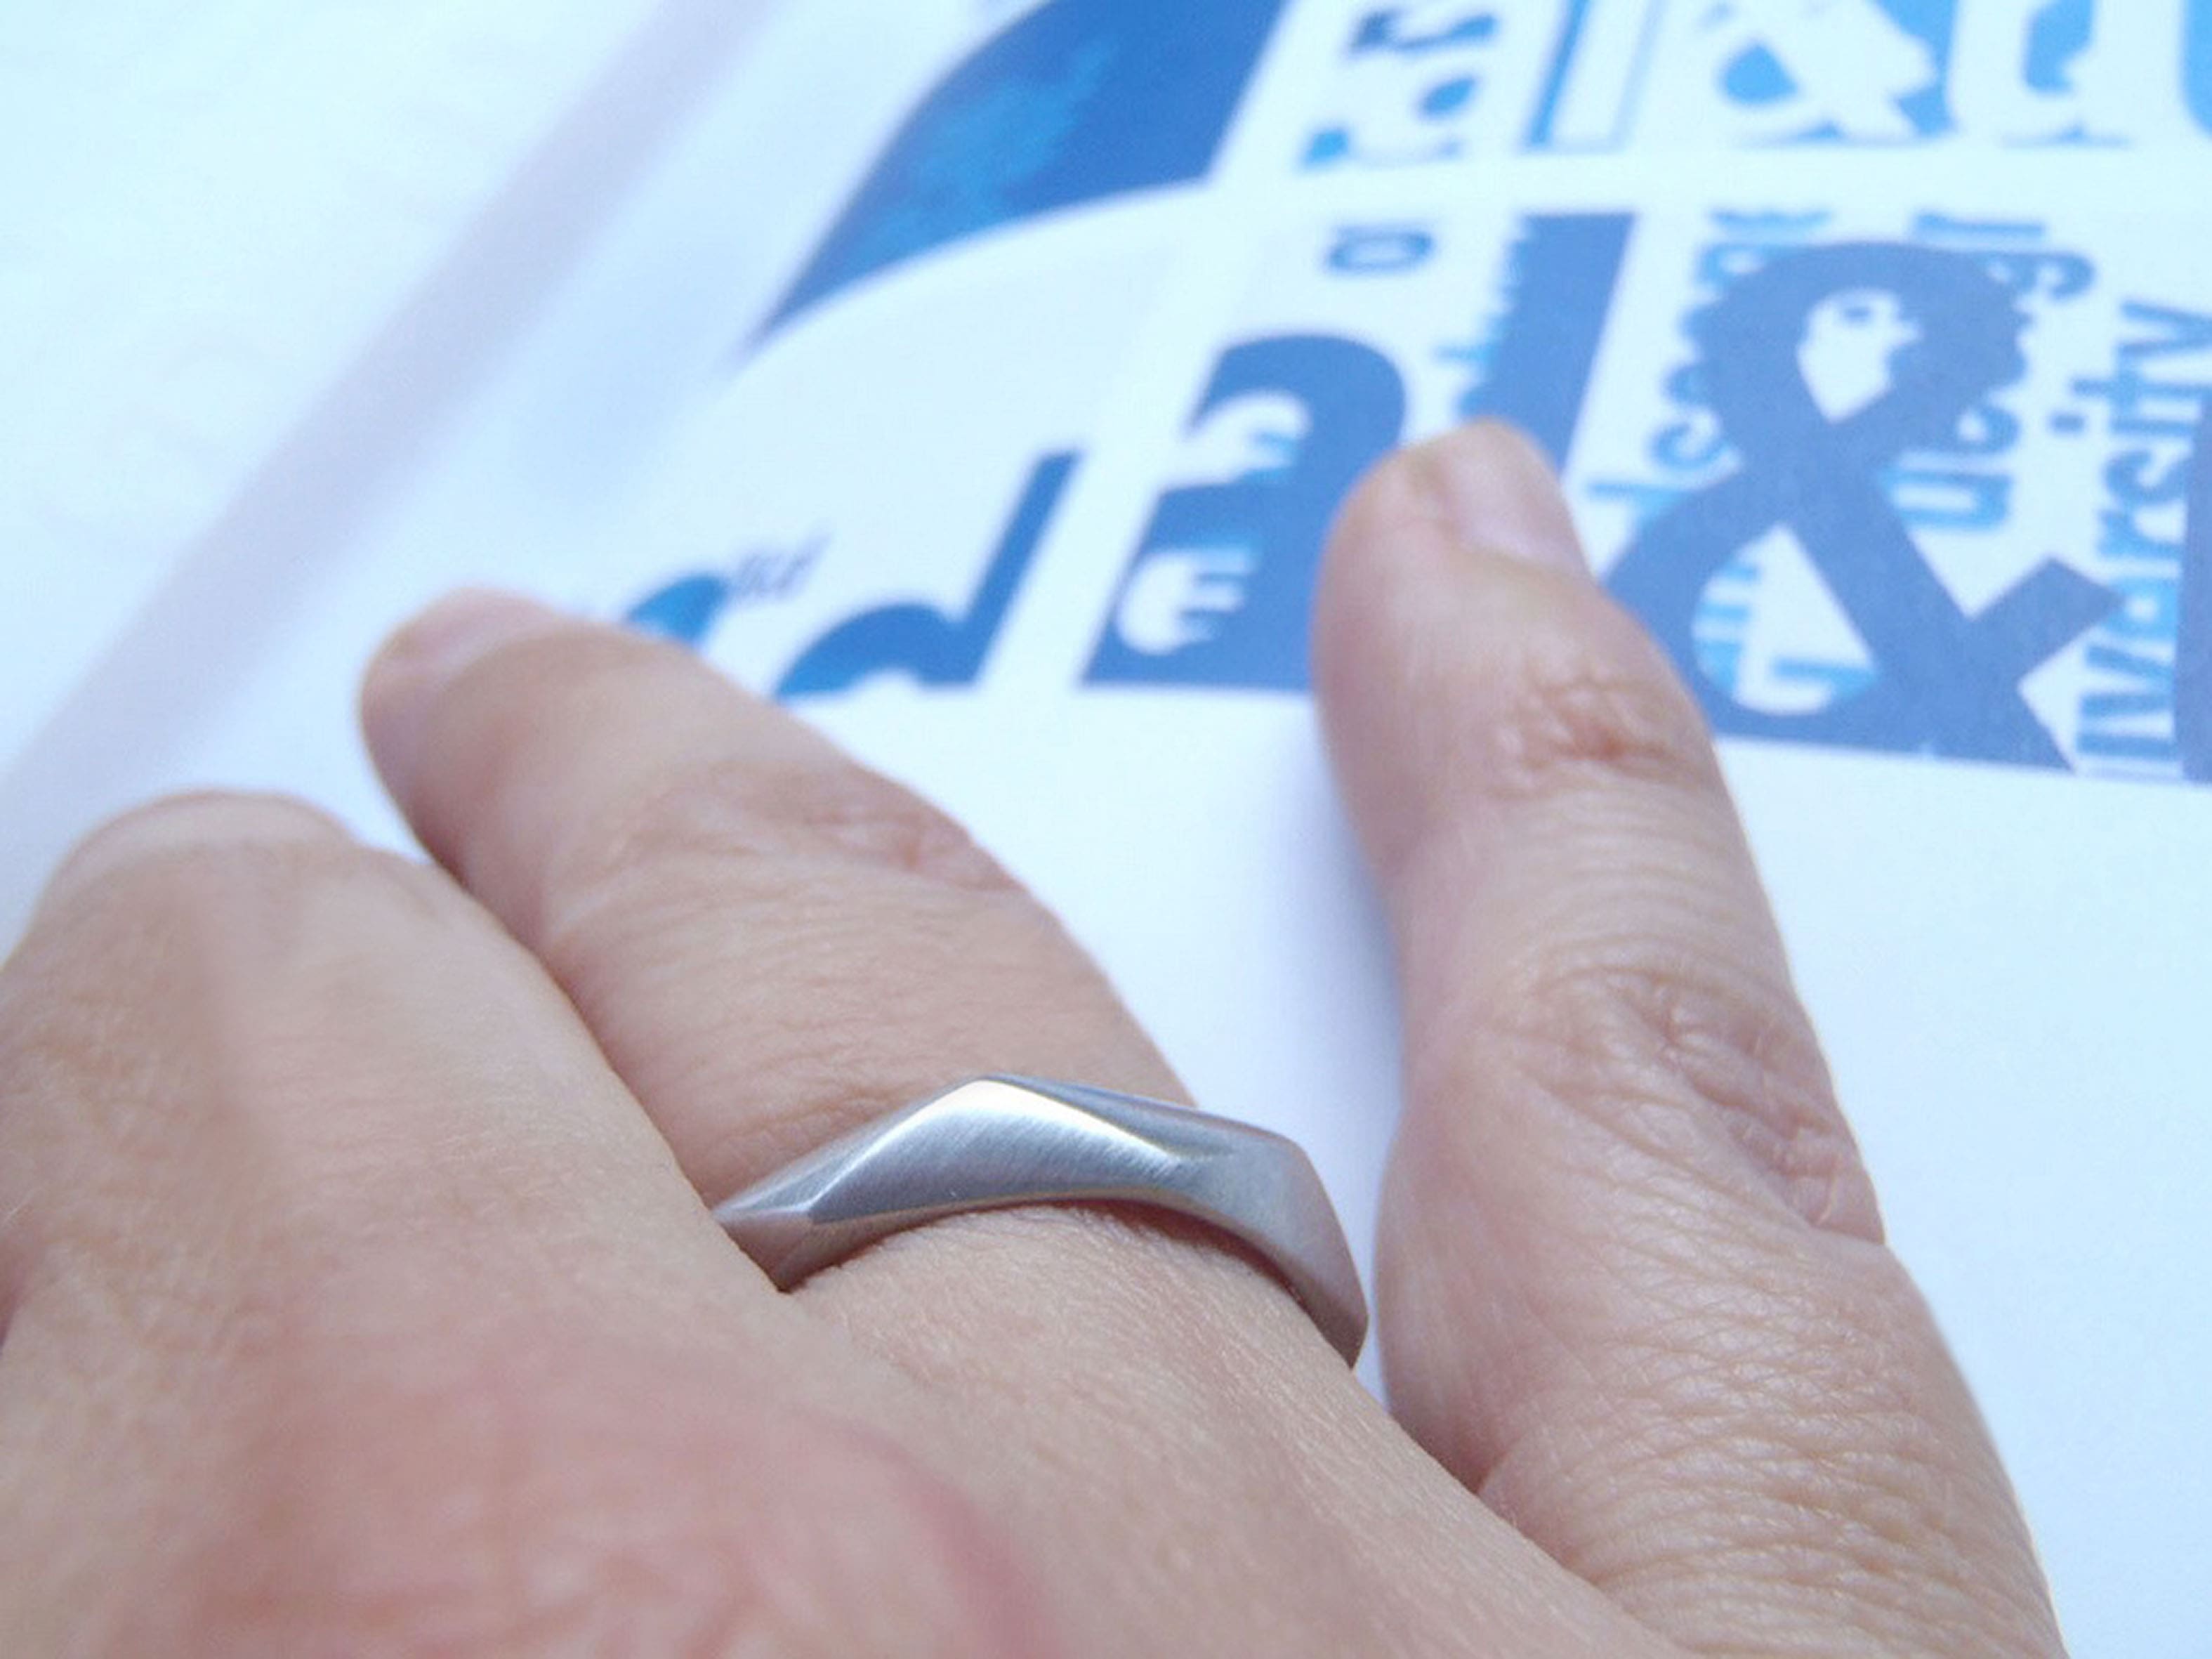 Una mano izquierda descansa sobre un la página de un libro en tono gris claro, lleva una  argolla de matrimonio de diseño geométrico minimalista hecha en oro blanco y con acabado rodizado mate